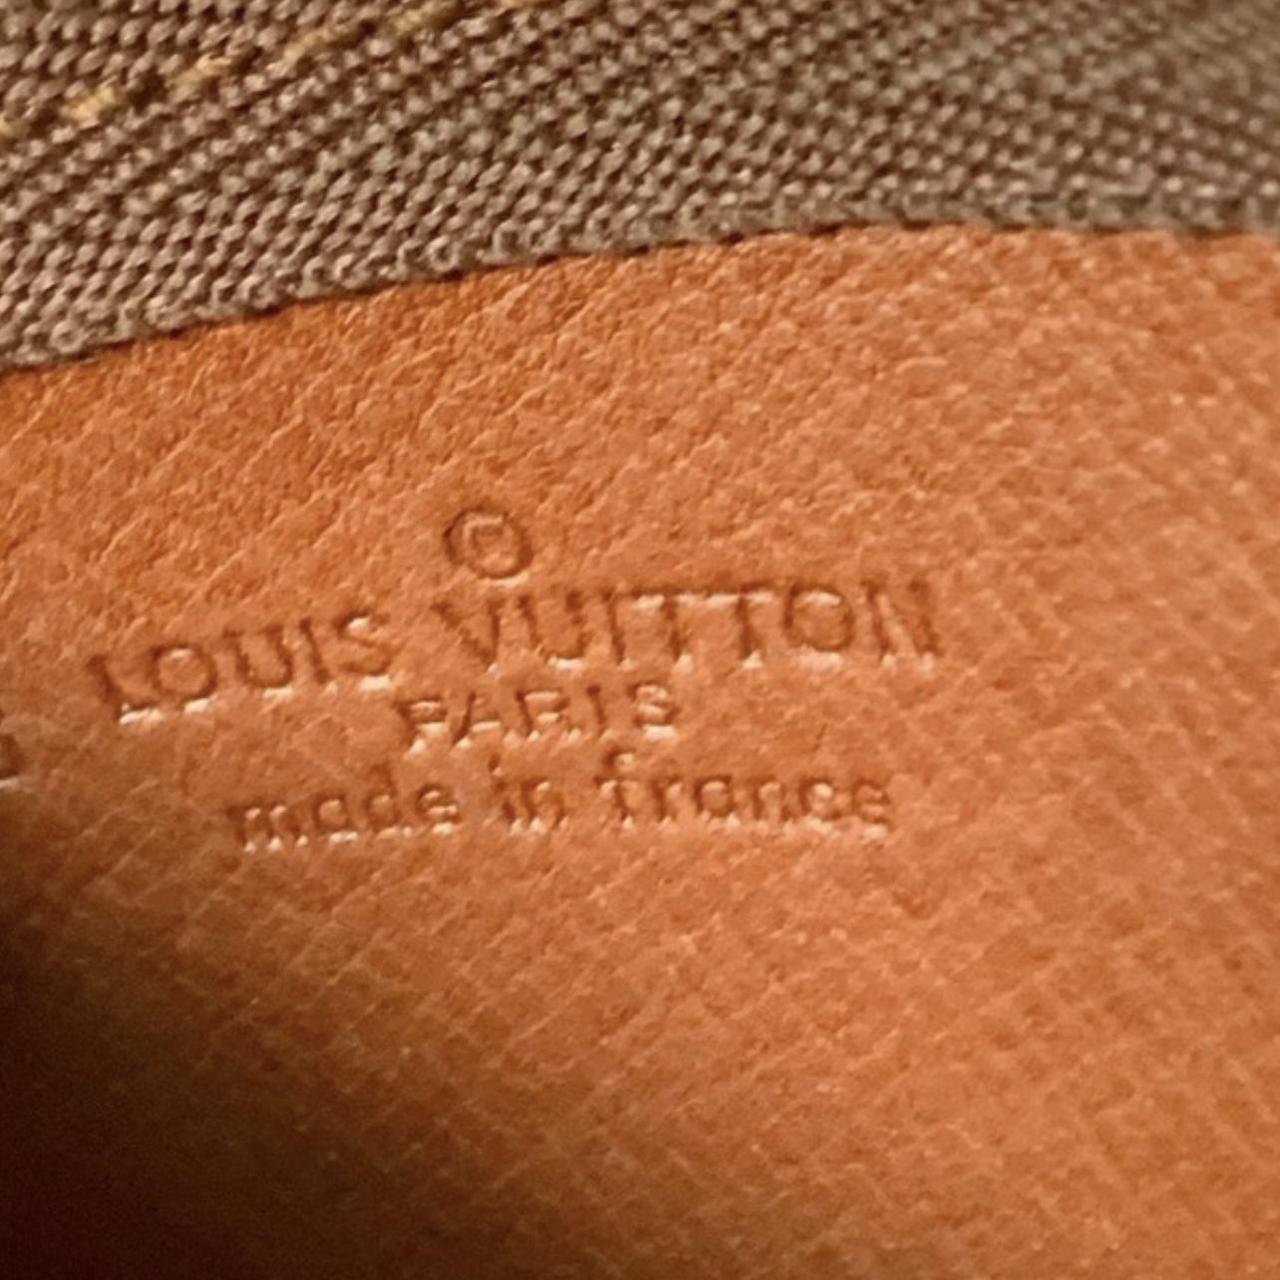 Louis Vuitton Amarante Monogram Vernis Key Pouch - Depop